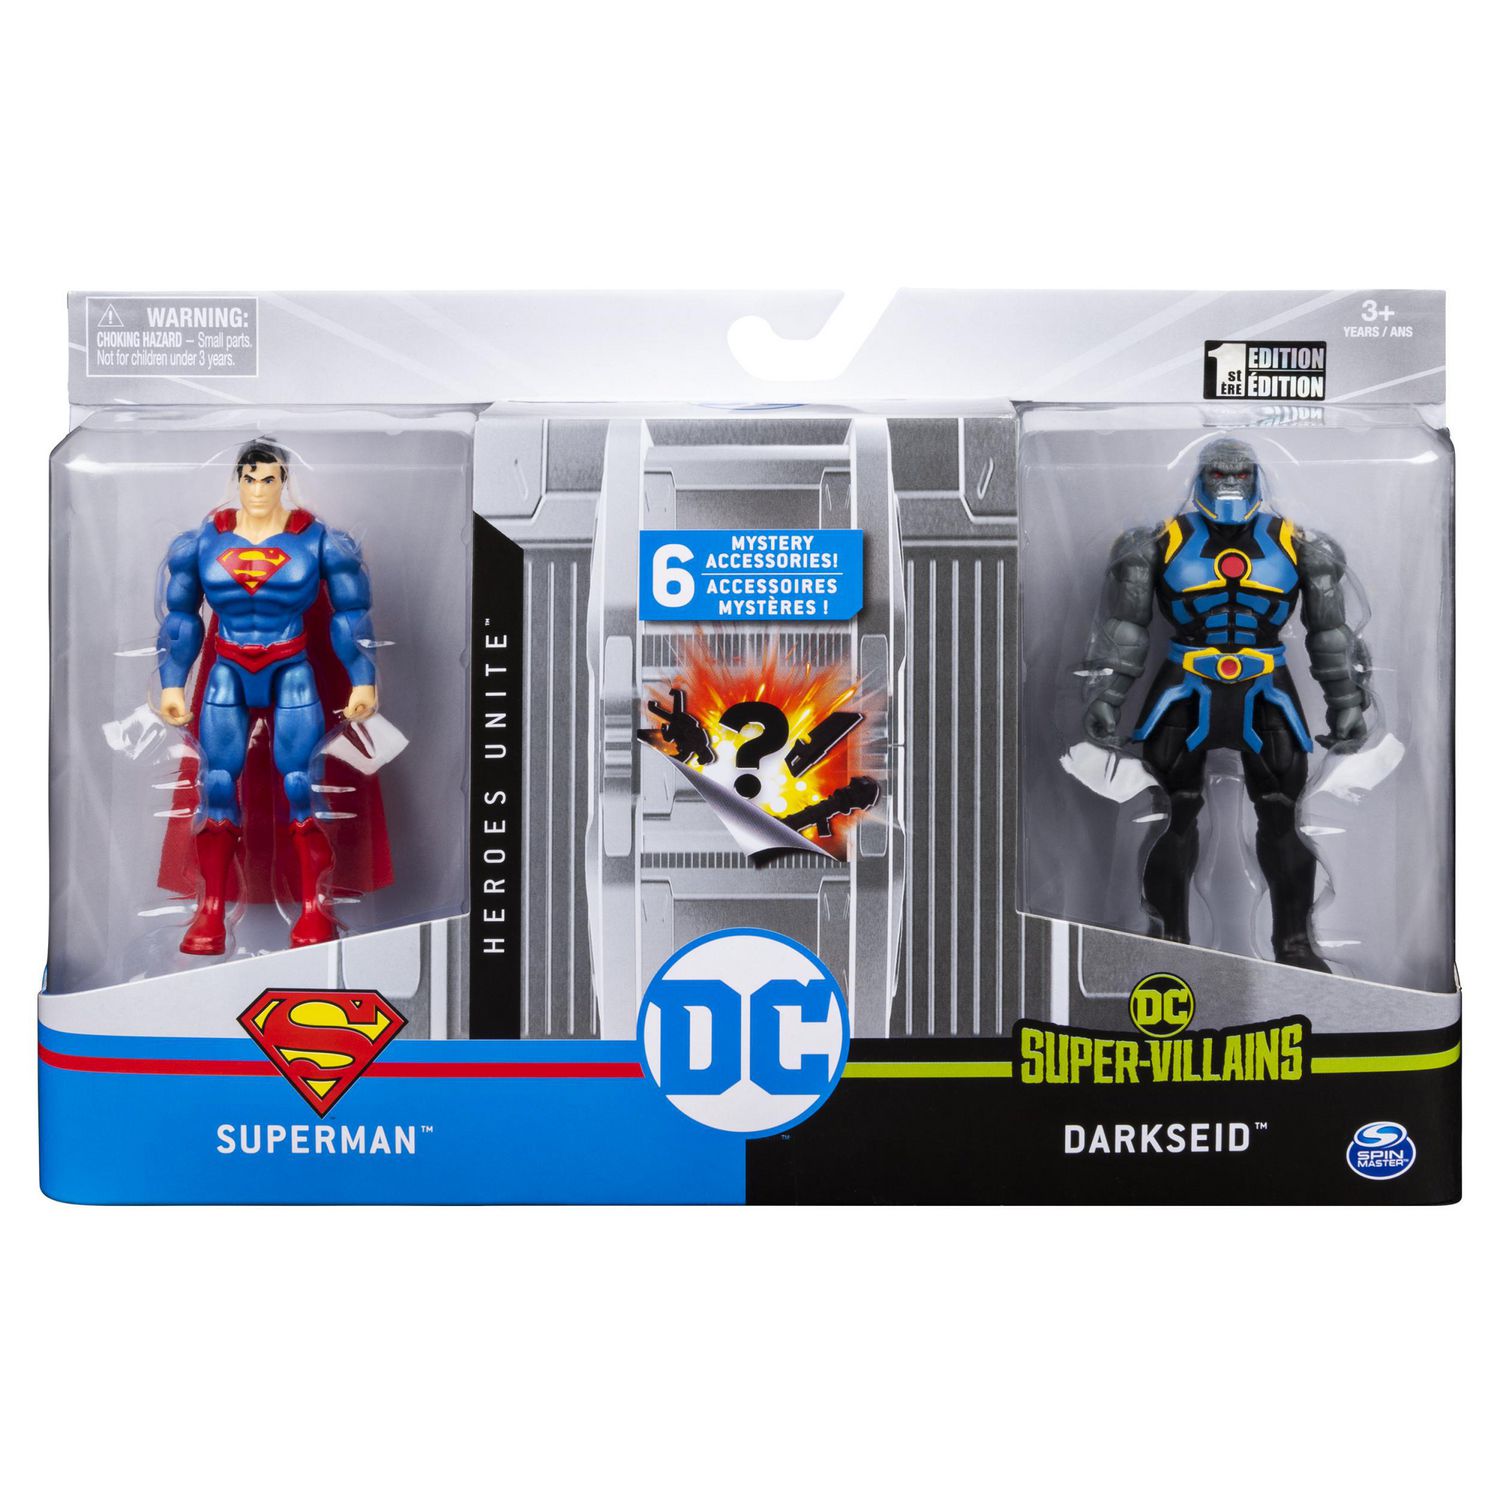 DC Comics Universe 4-Inch Action Figures Battle Pack Superman vs. Darseid